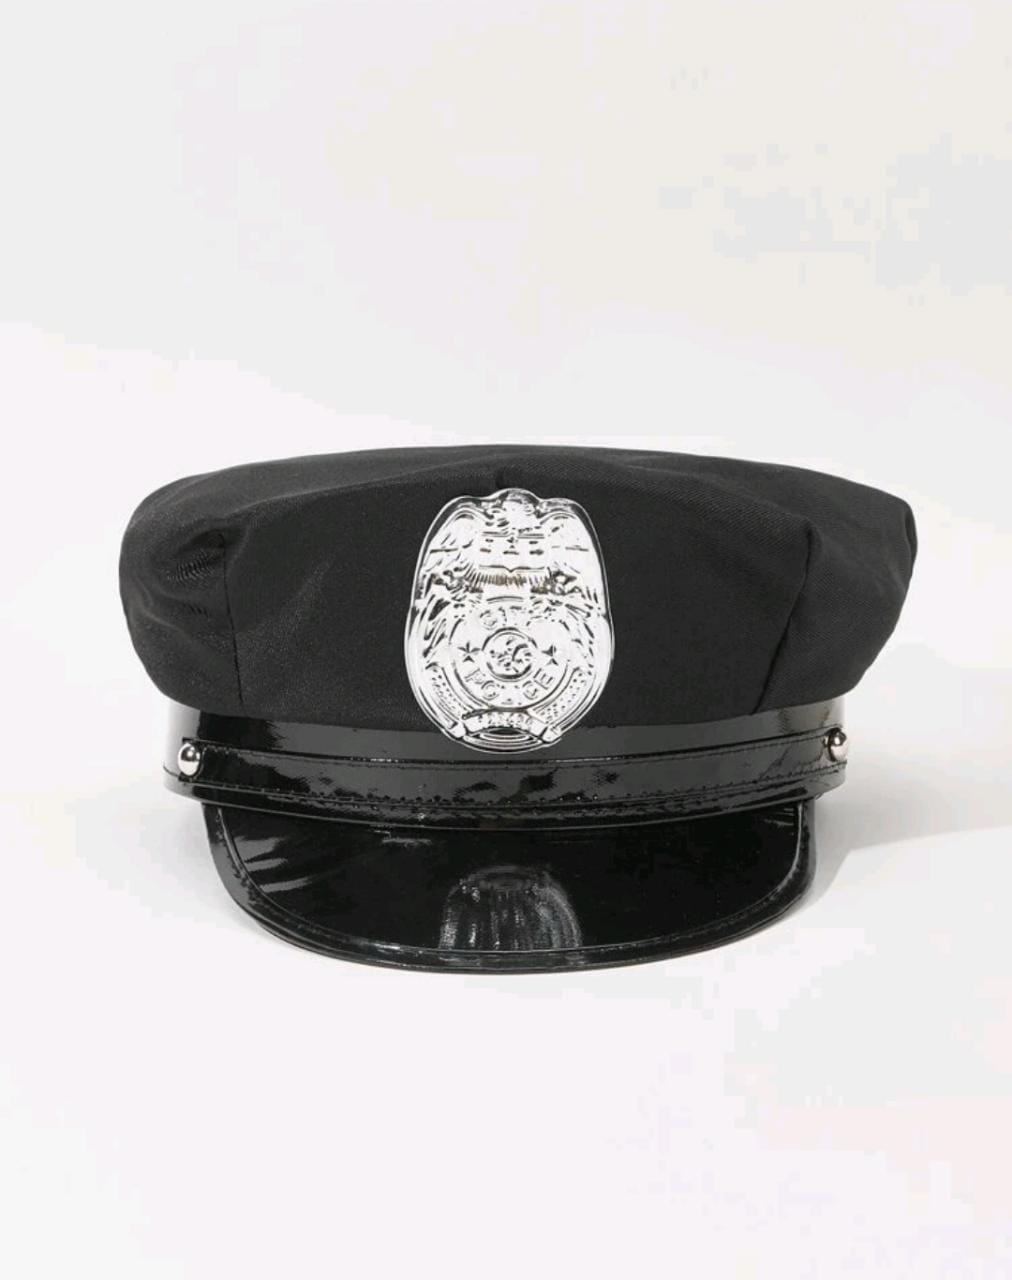 قبعه شرطة زي تنكري